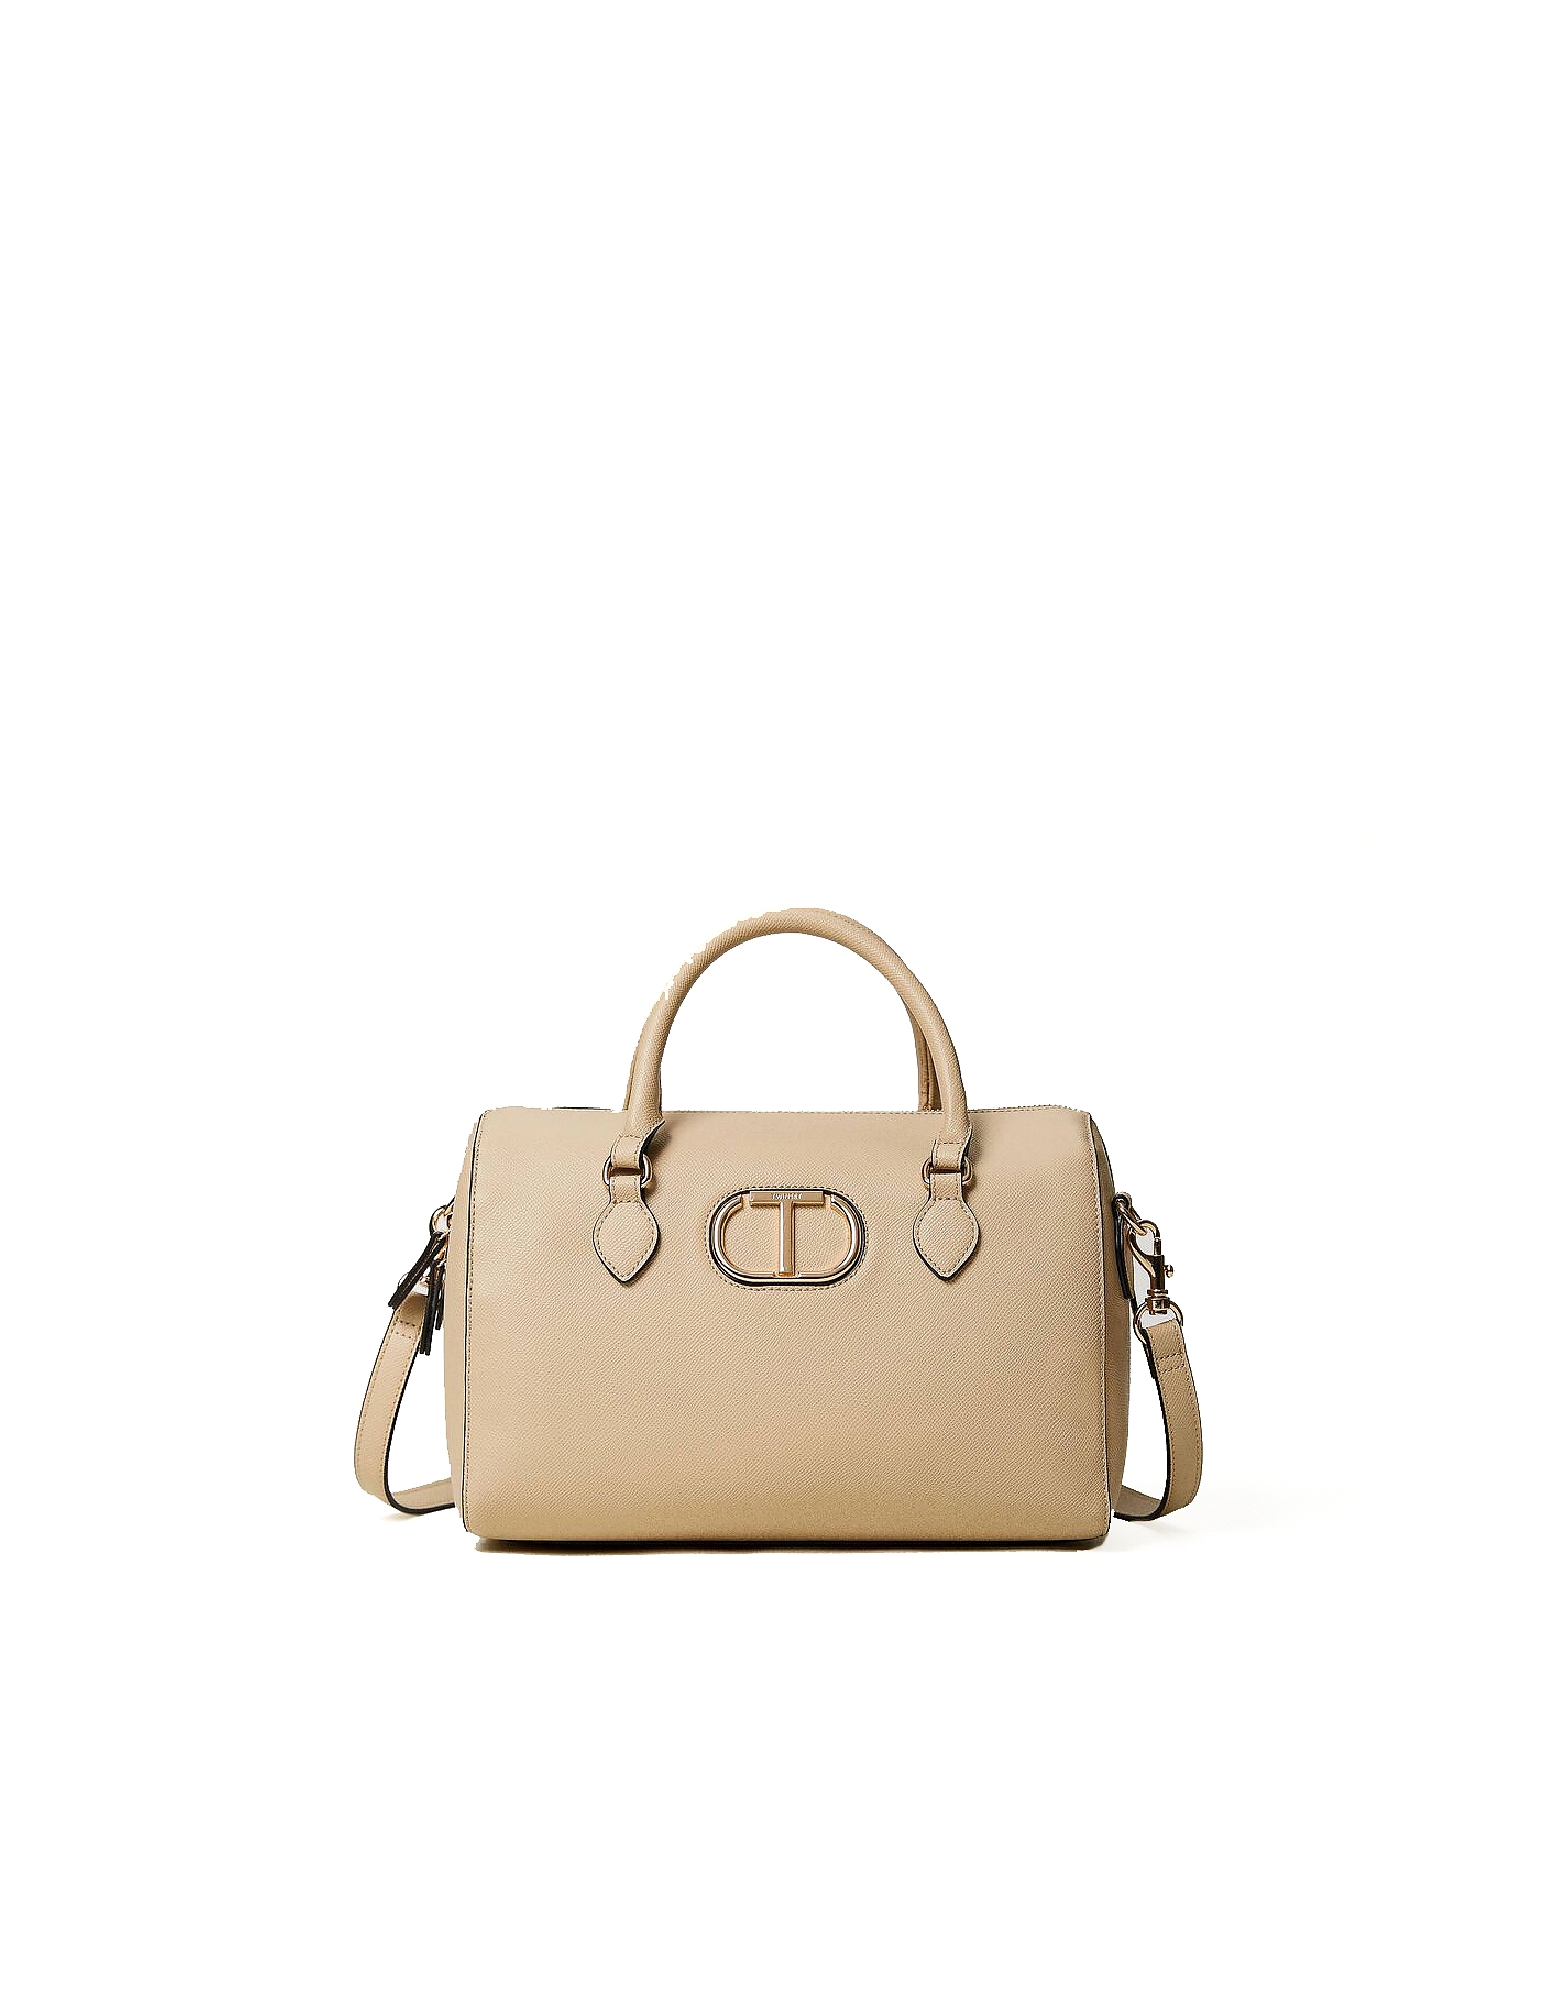 Twinset Designer Handbags Women's Bag In Brown